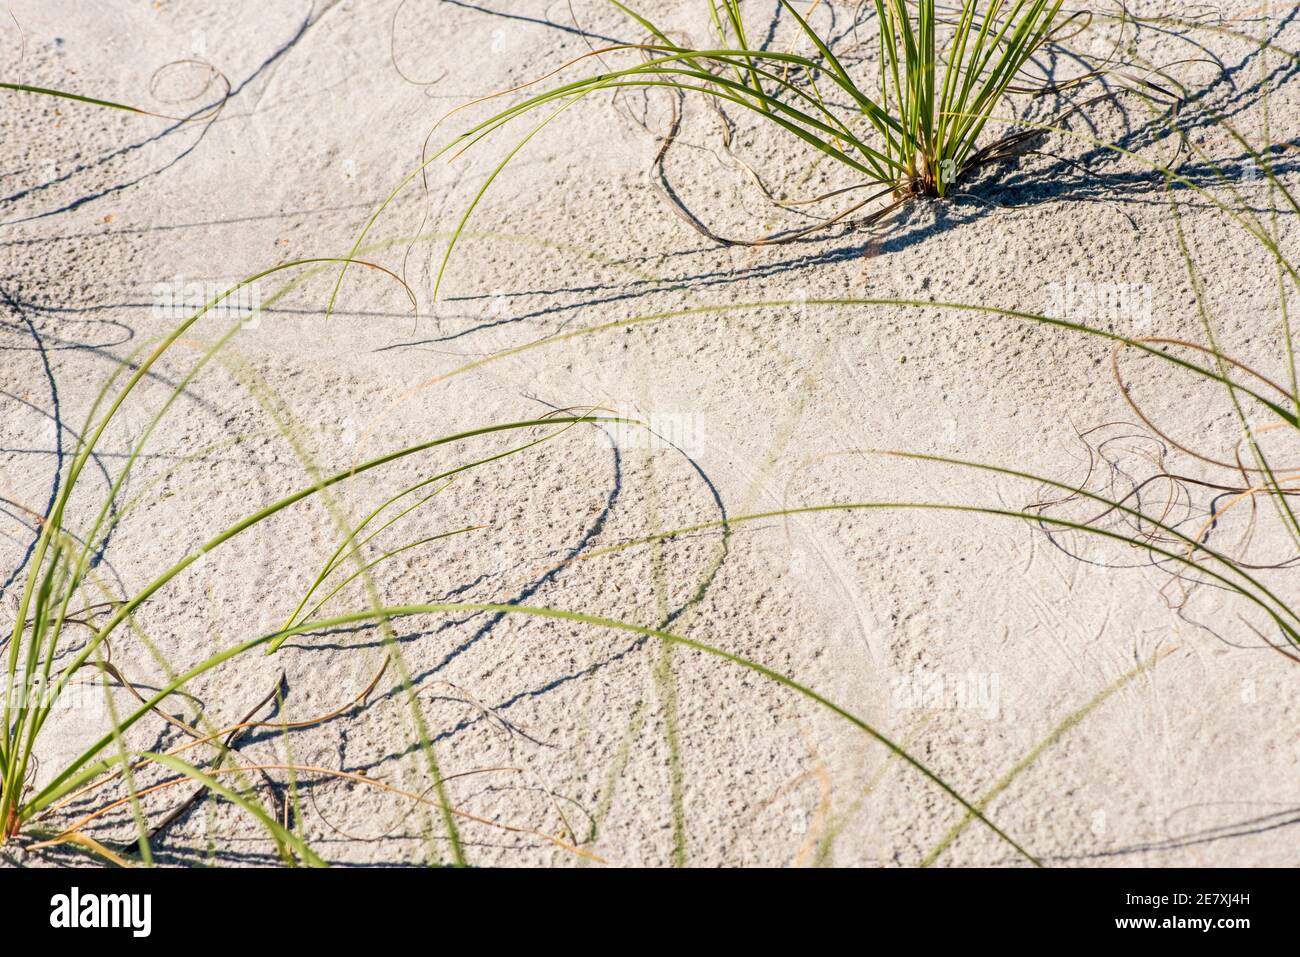 Seegras wird strategisch in Sanddünen gepflanzt, um die Erosion des Strandes zu verhindern. Stockfoto